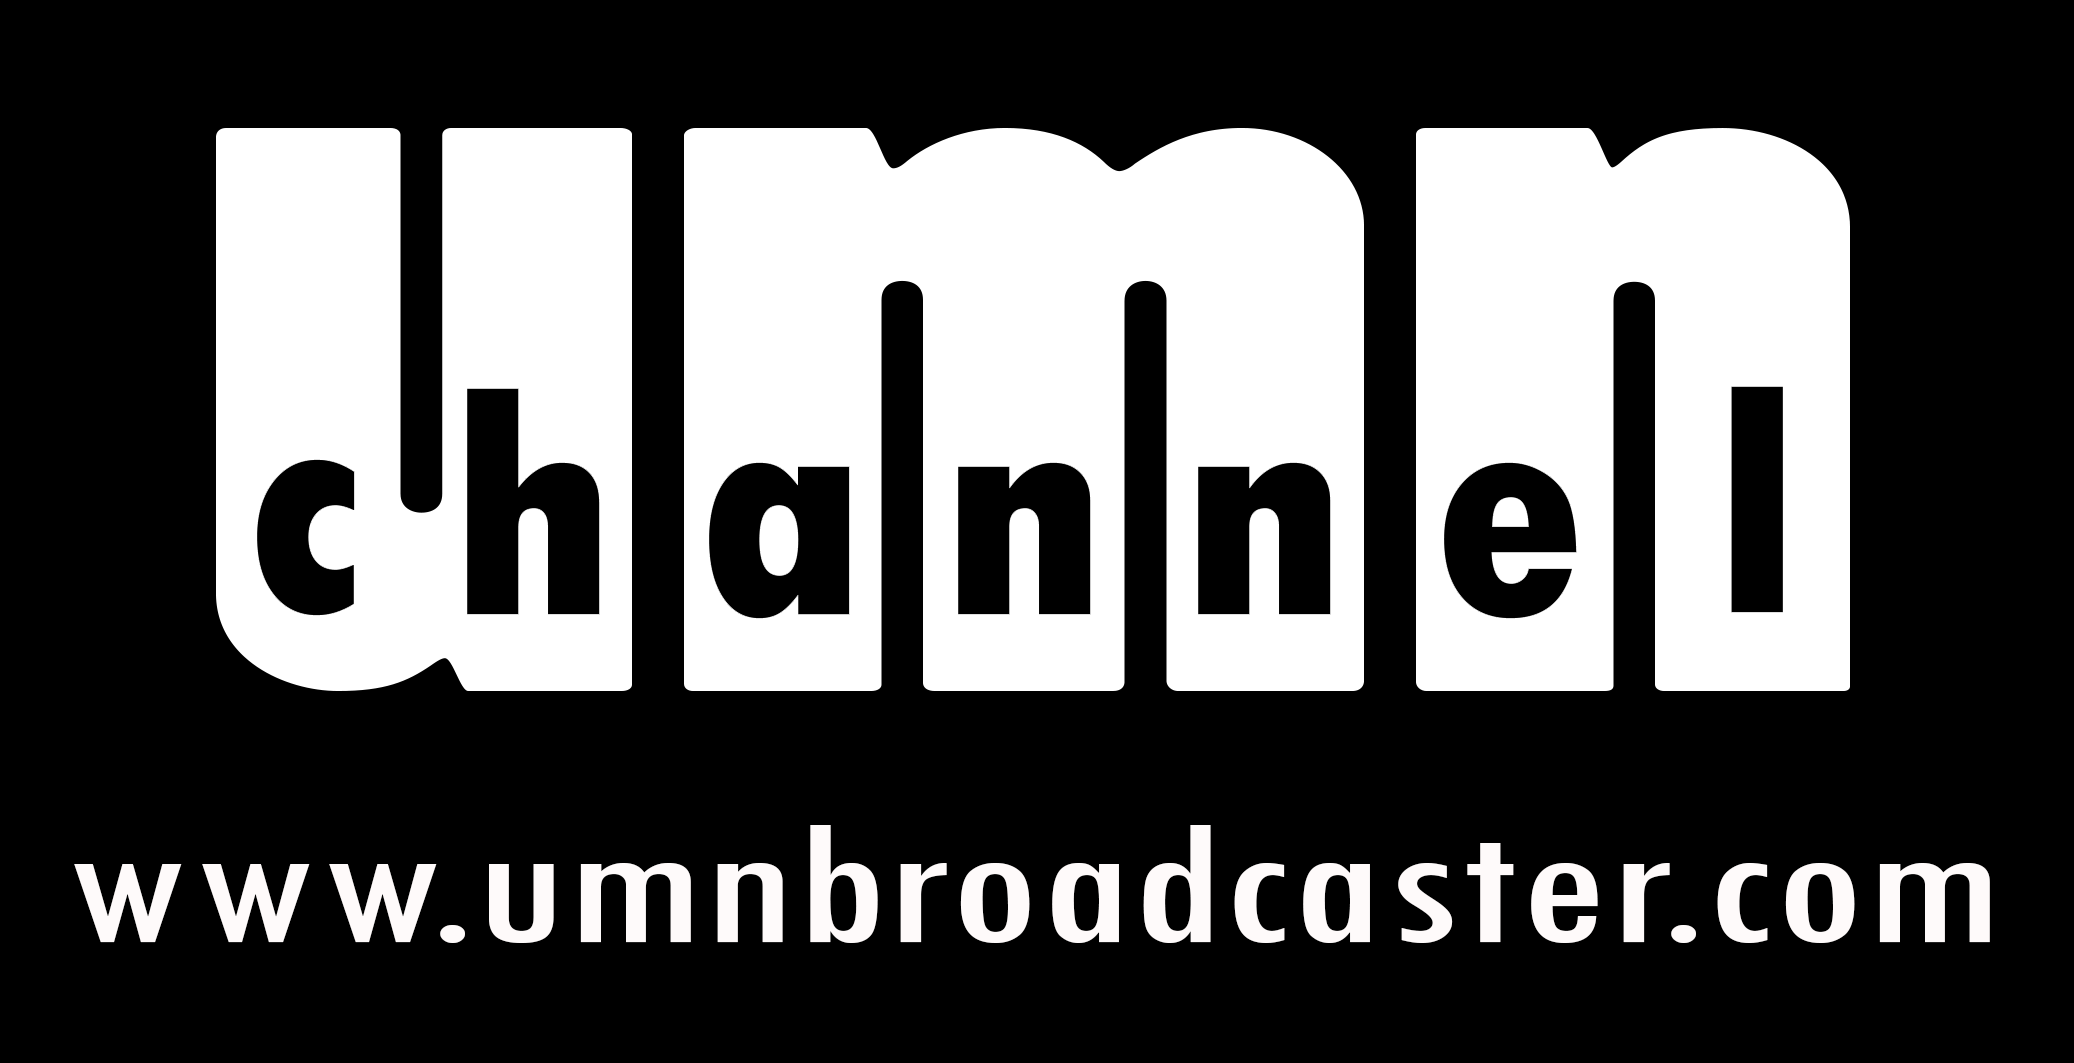 Mulai 28 Februari 2015, komunitas dan kepengurusan UMN Broadcaster telah dibubarkan. Seluruh kegiatan dan kepengurusan dialihkan ke @officialumntv :)